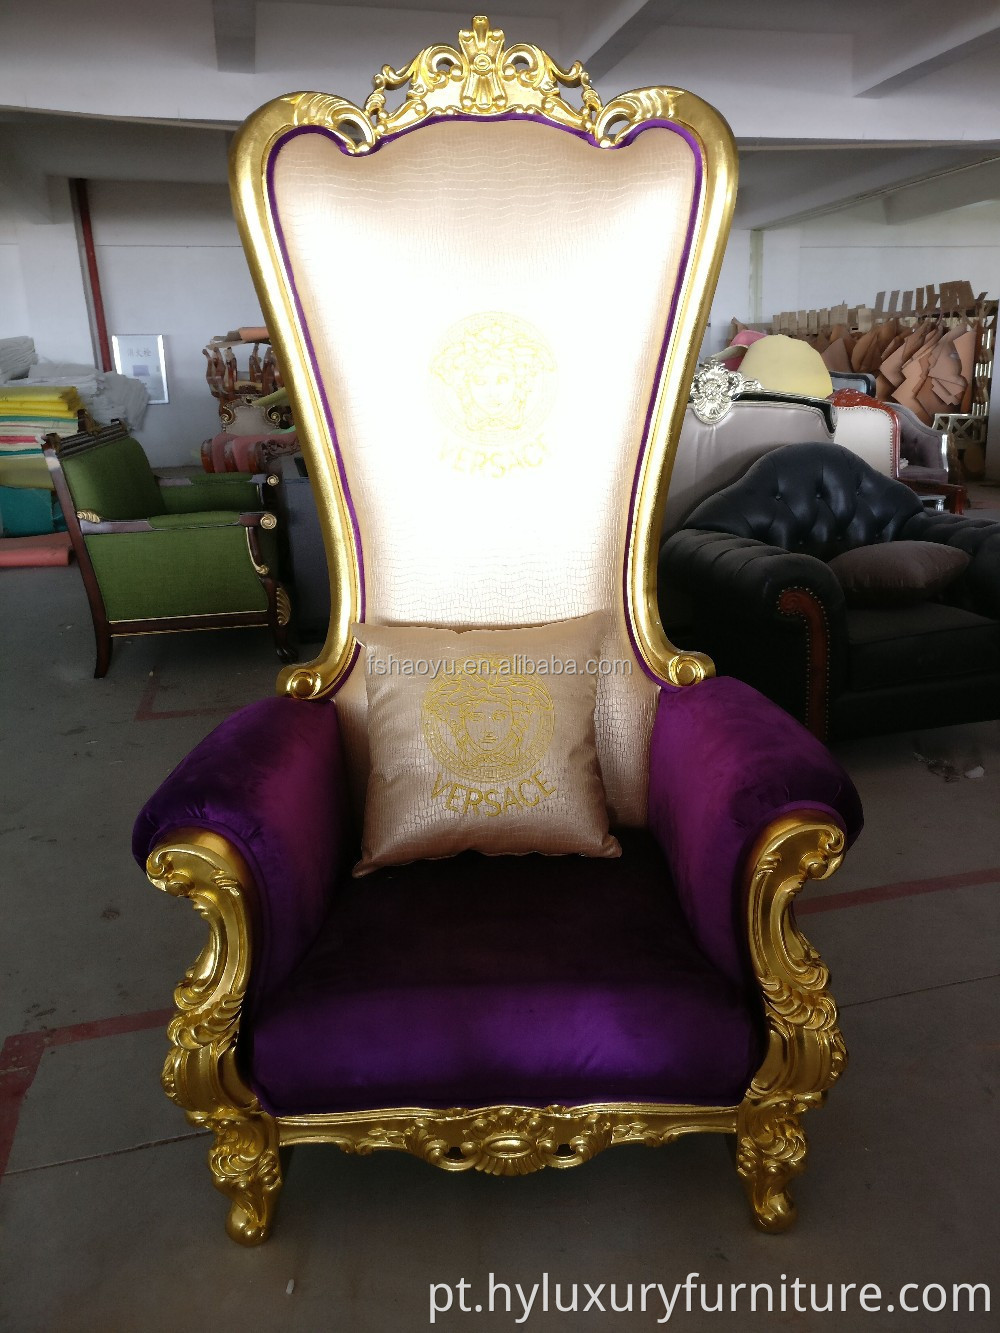 Fornecimento de cadeira royal king throne, cadeira PU bergere, cadeira de couro roxo para hotel com encosto alto